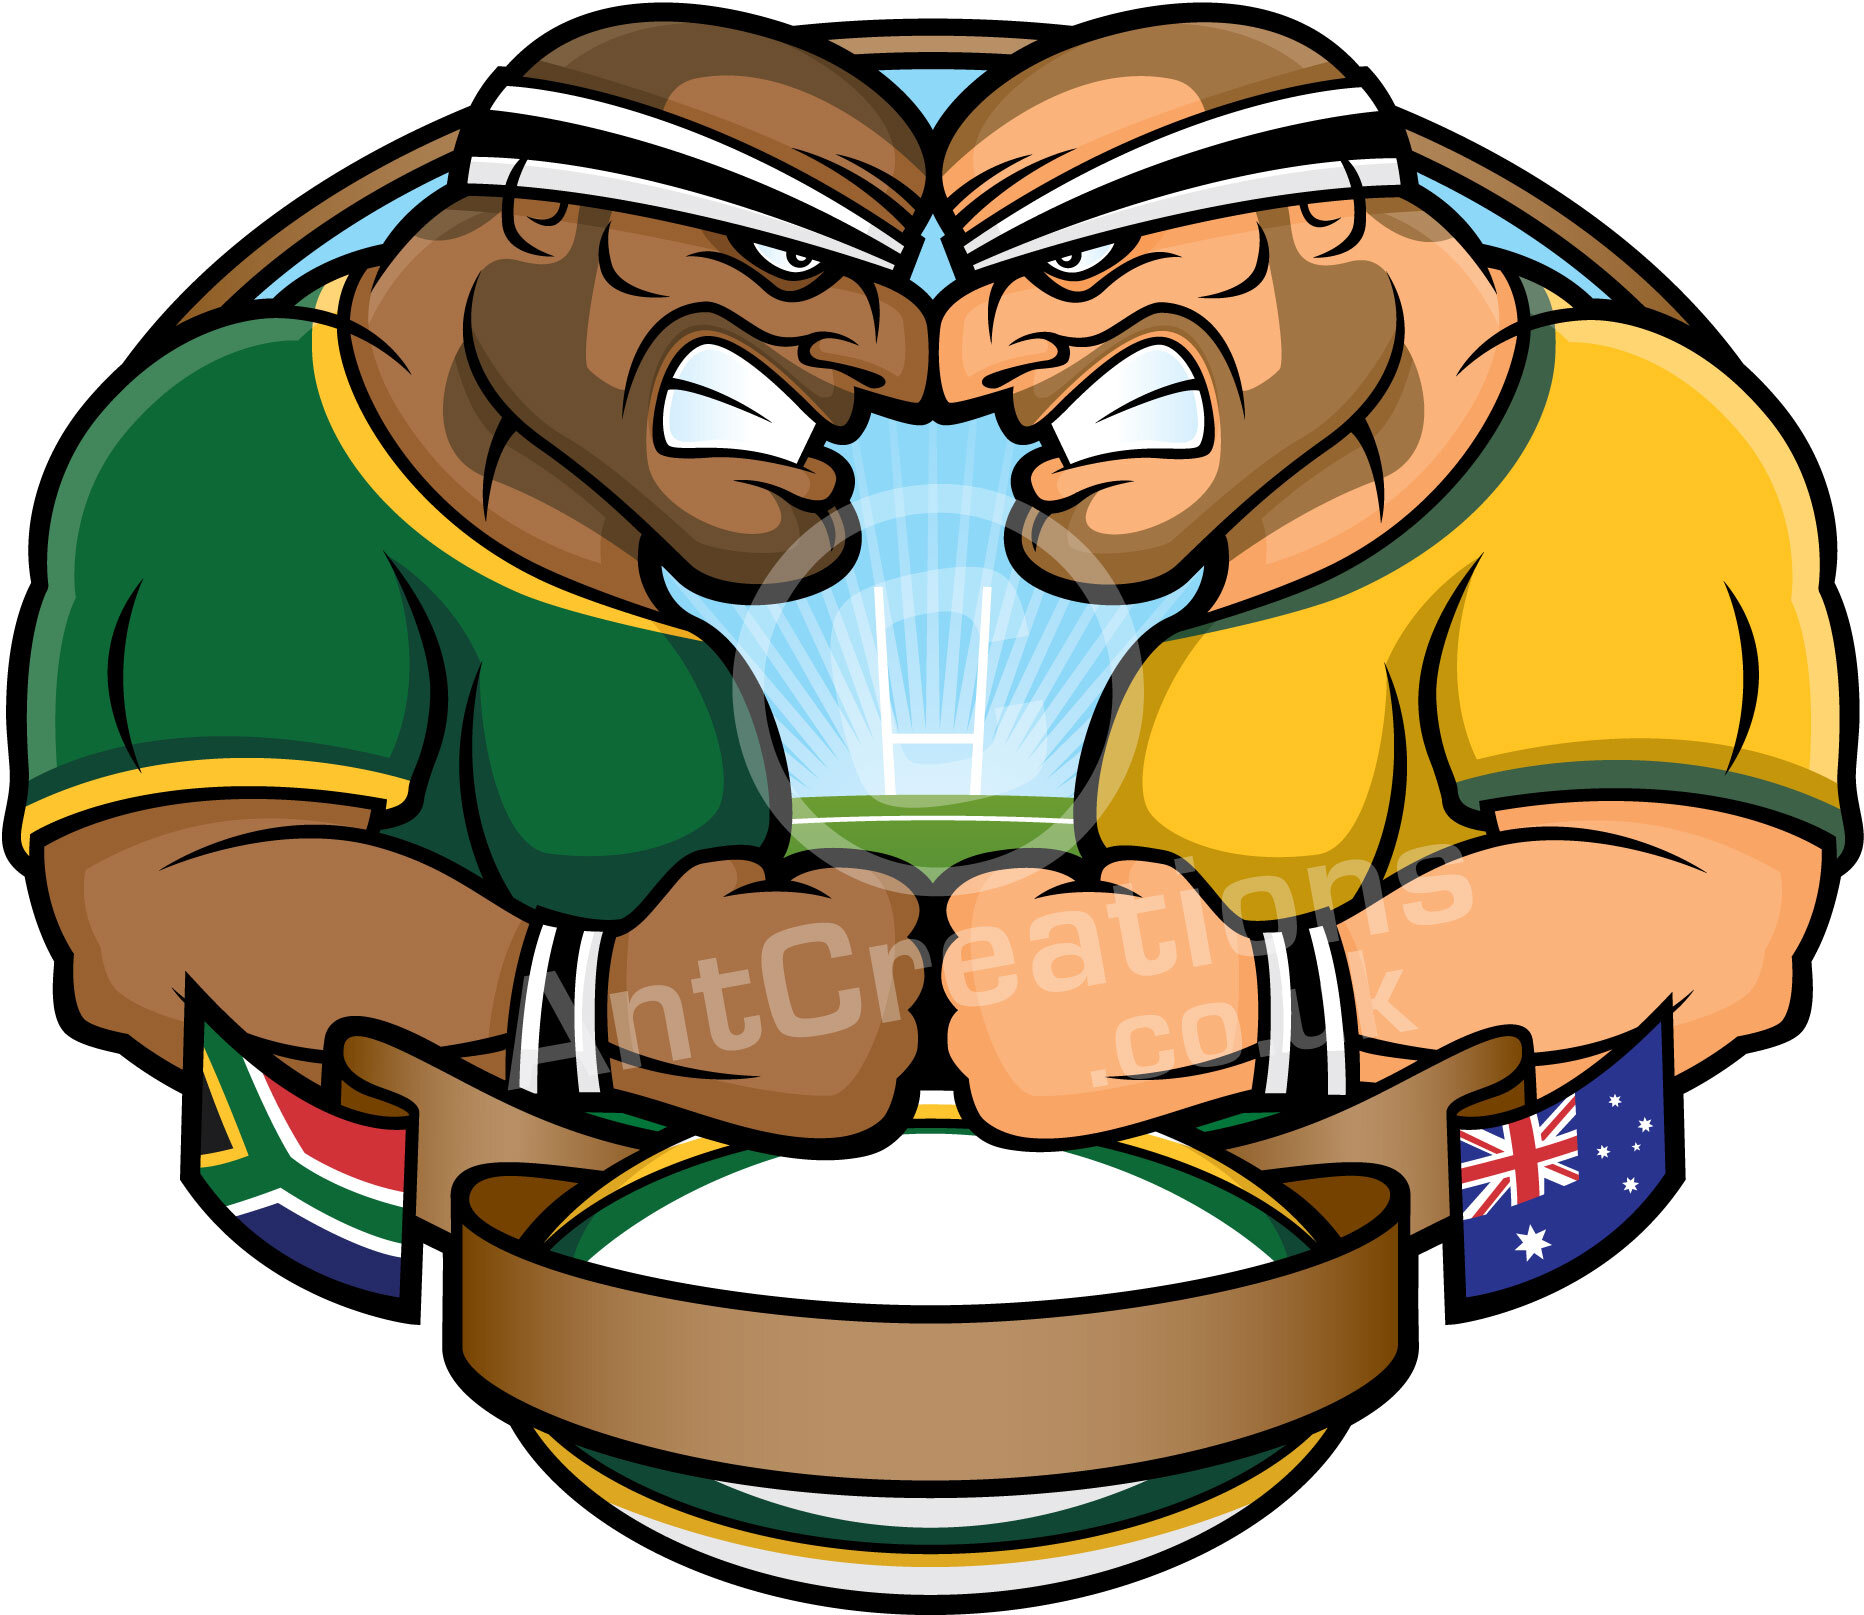 Rugby-Emblem-SAvsAus.jpg